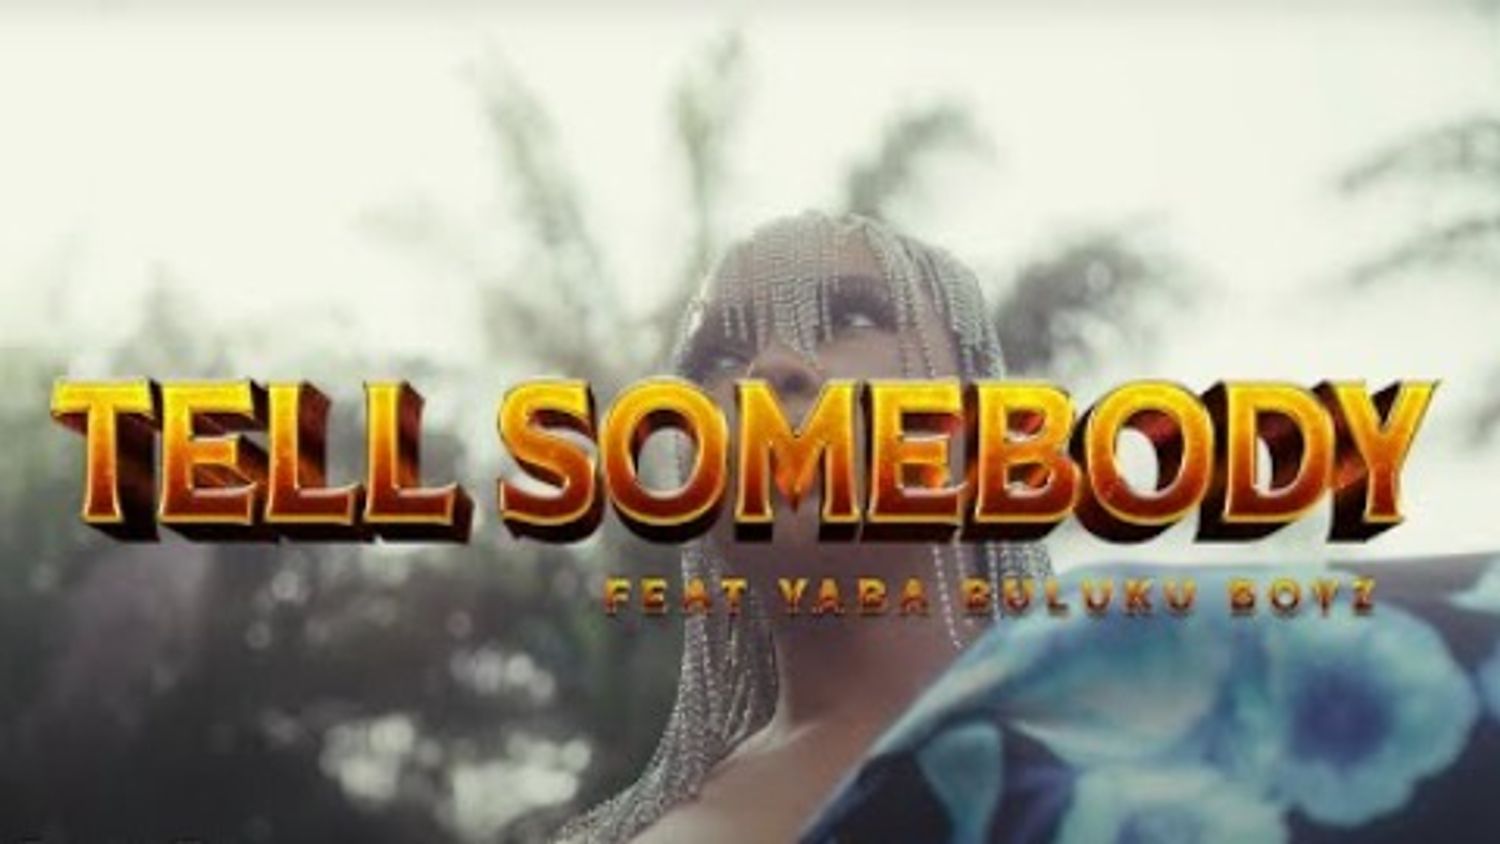 Yemi Alade - Tell Somebody (feat. Yaba Buluku Boyz)